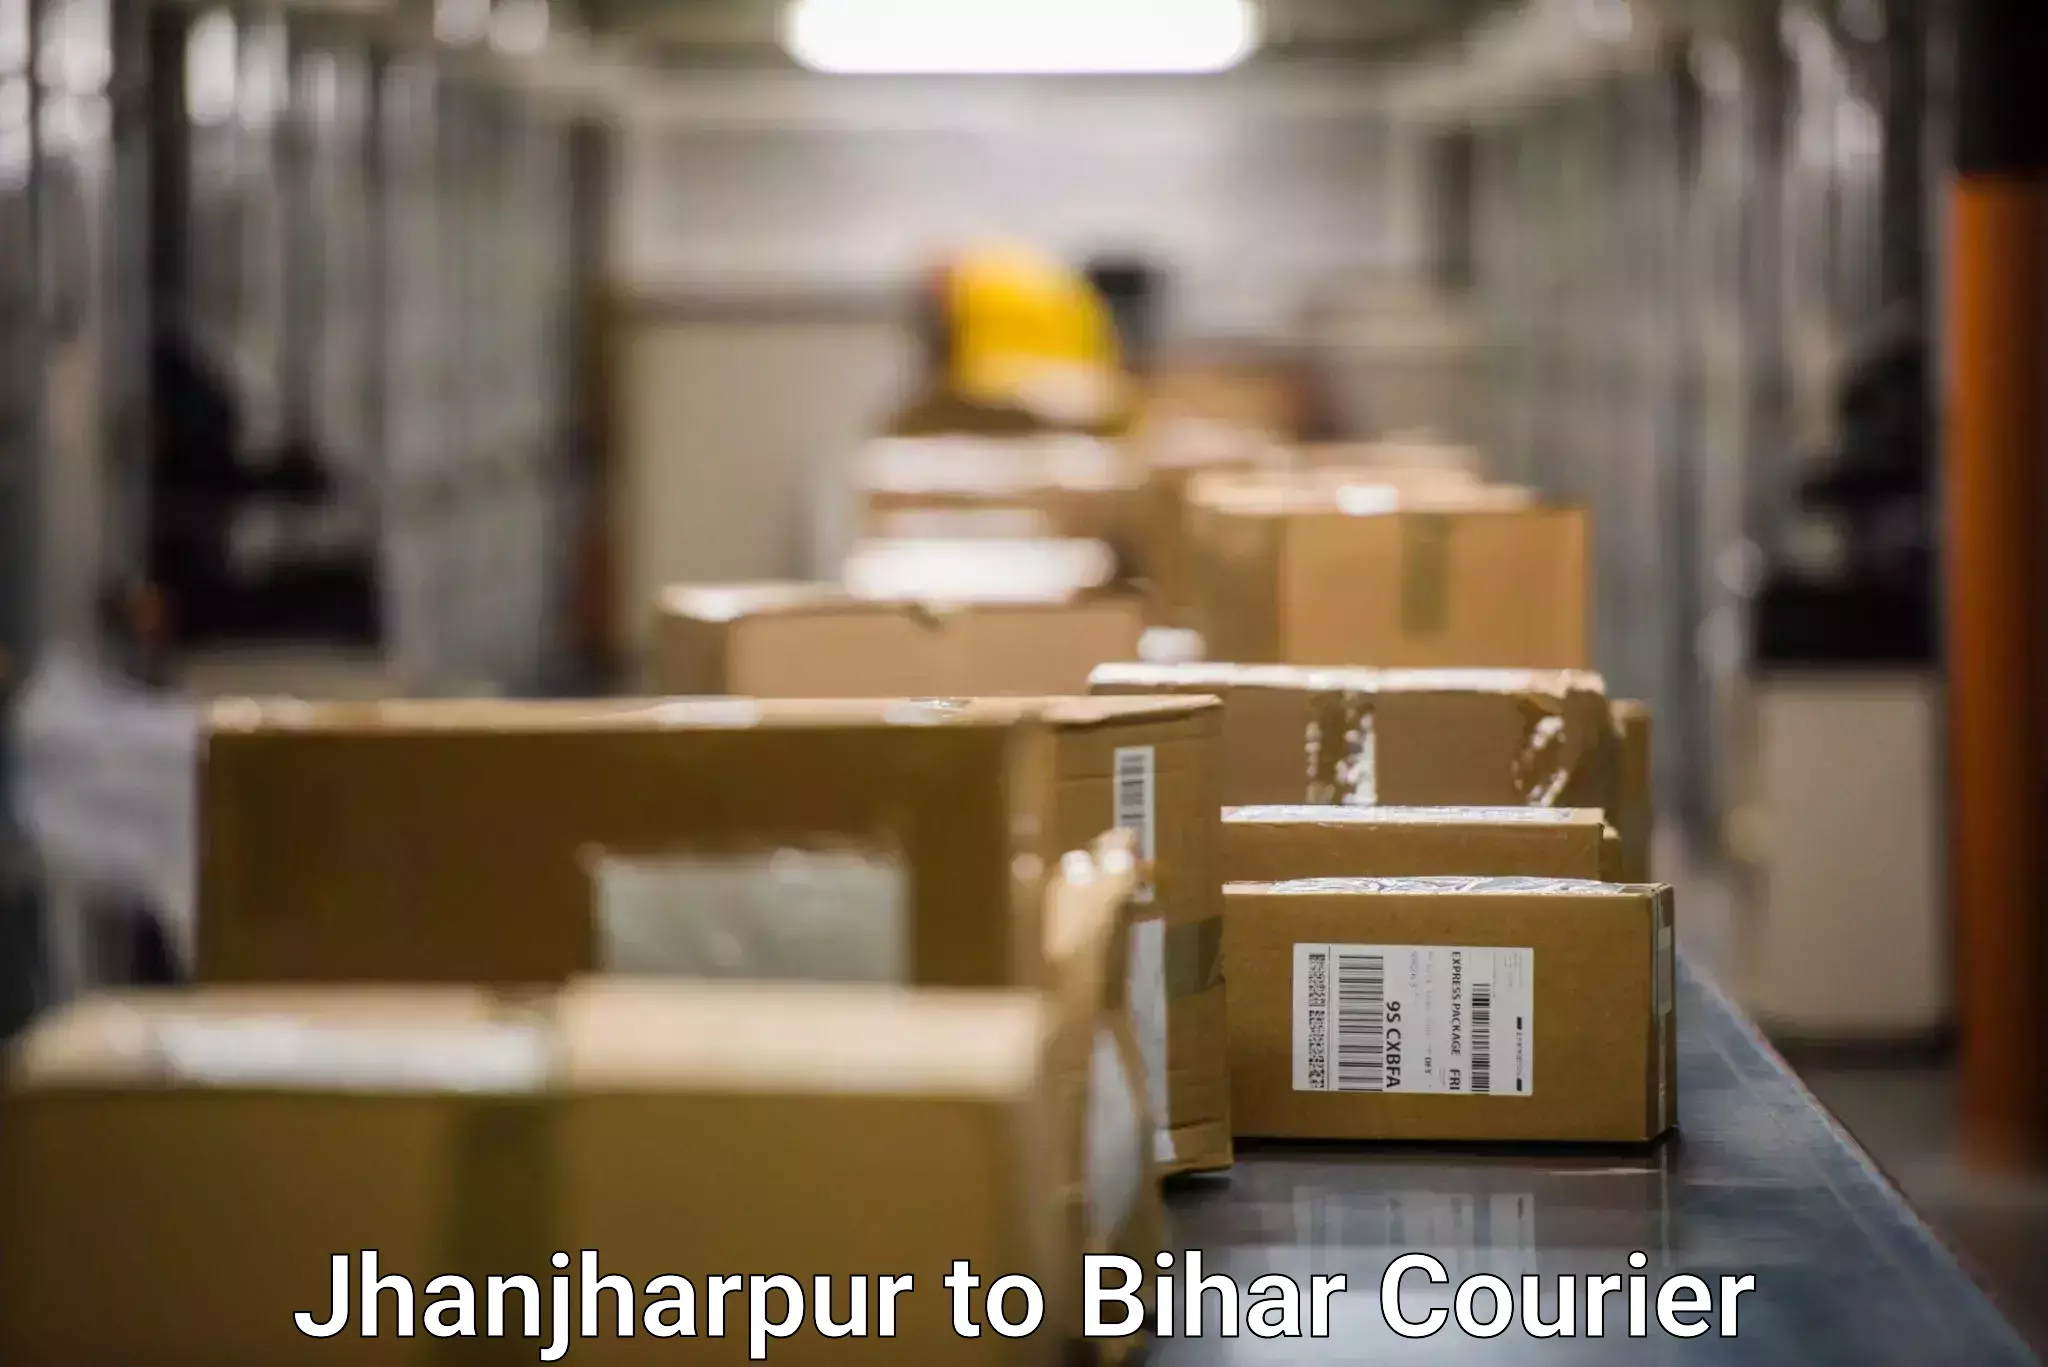 Flexible delivery scheduling in Jhanjharpur to IIIT Bhagalpur